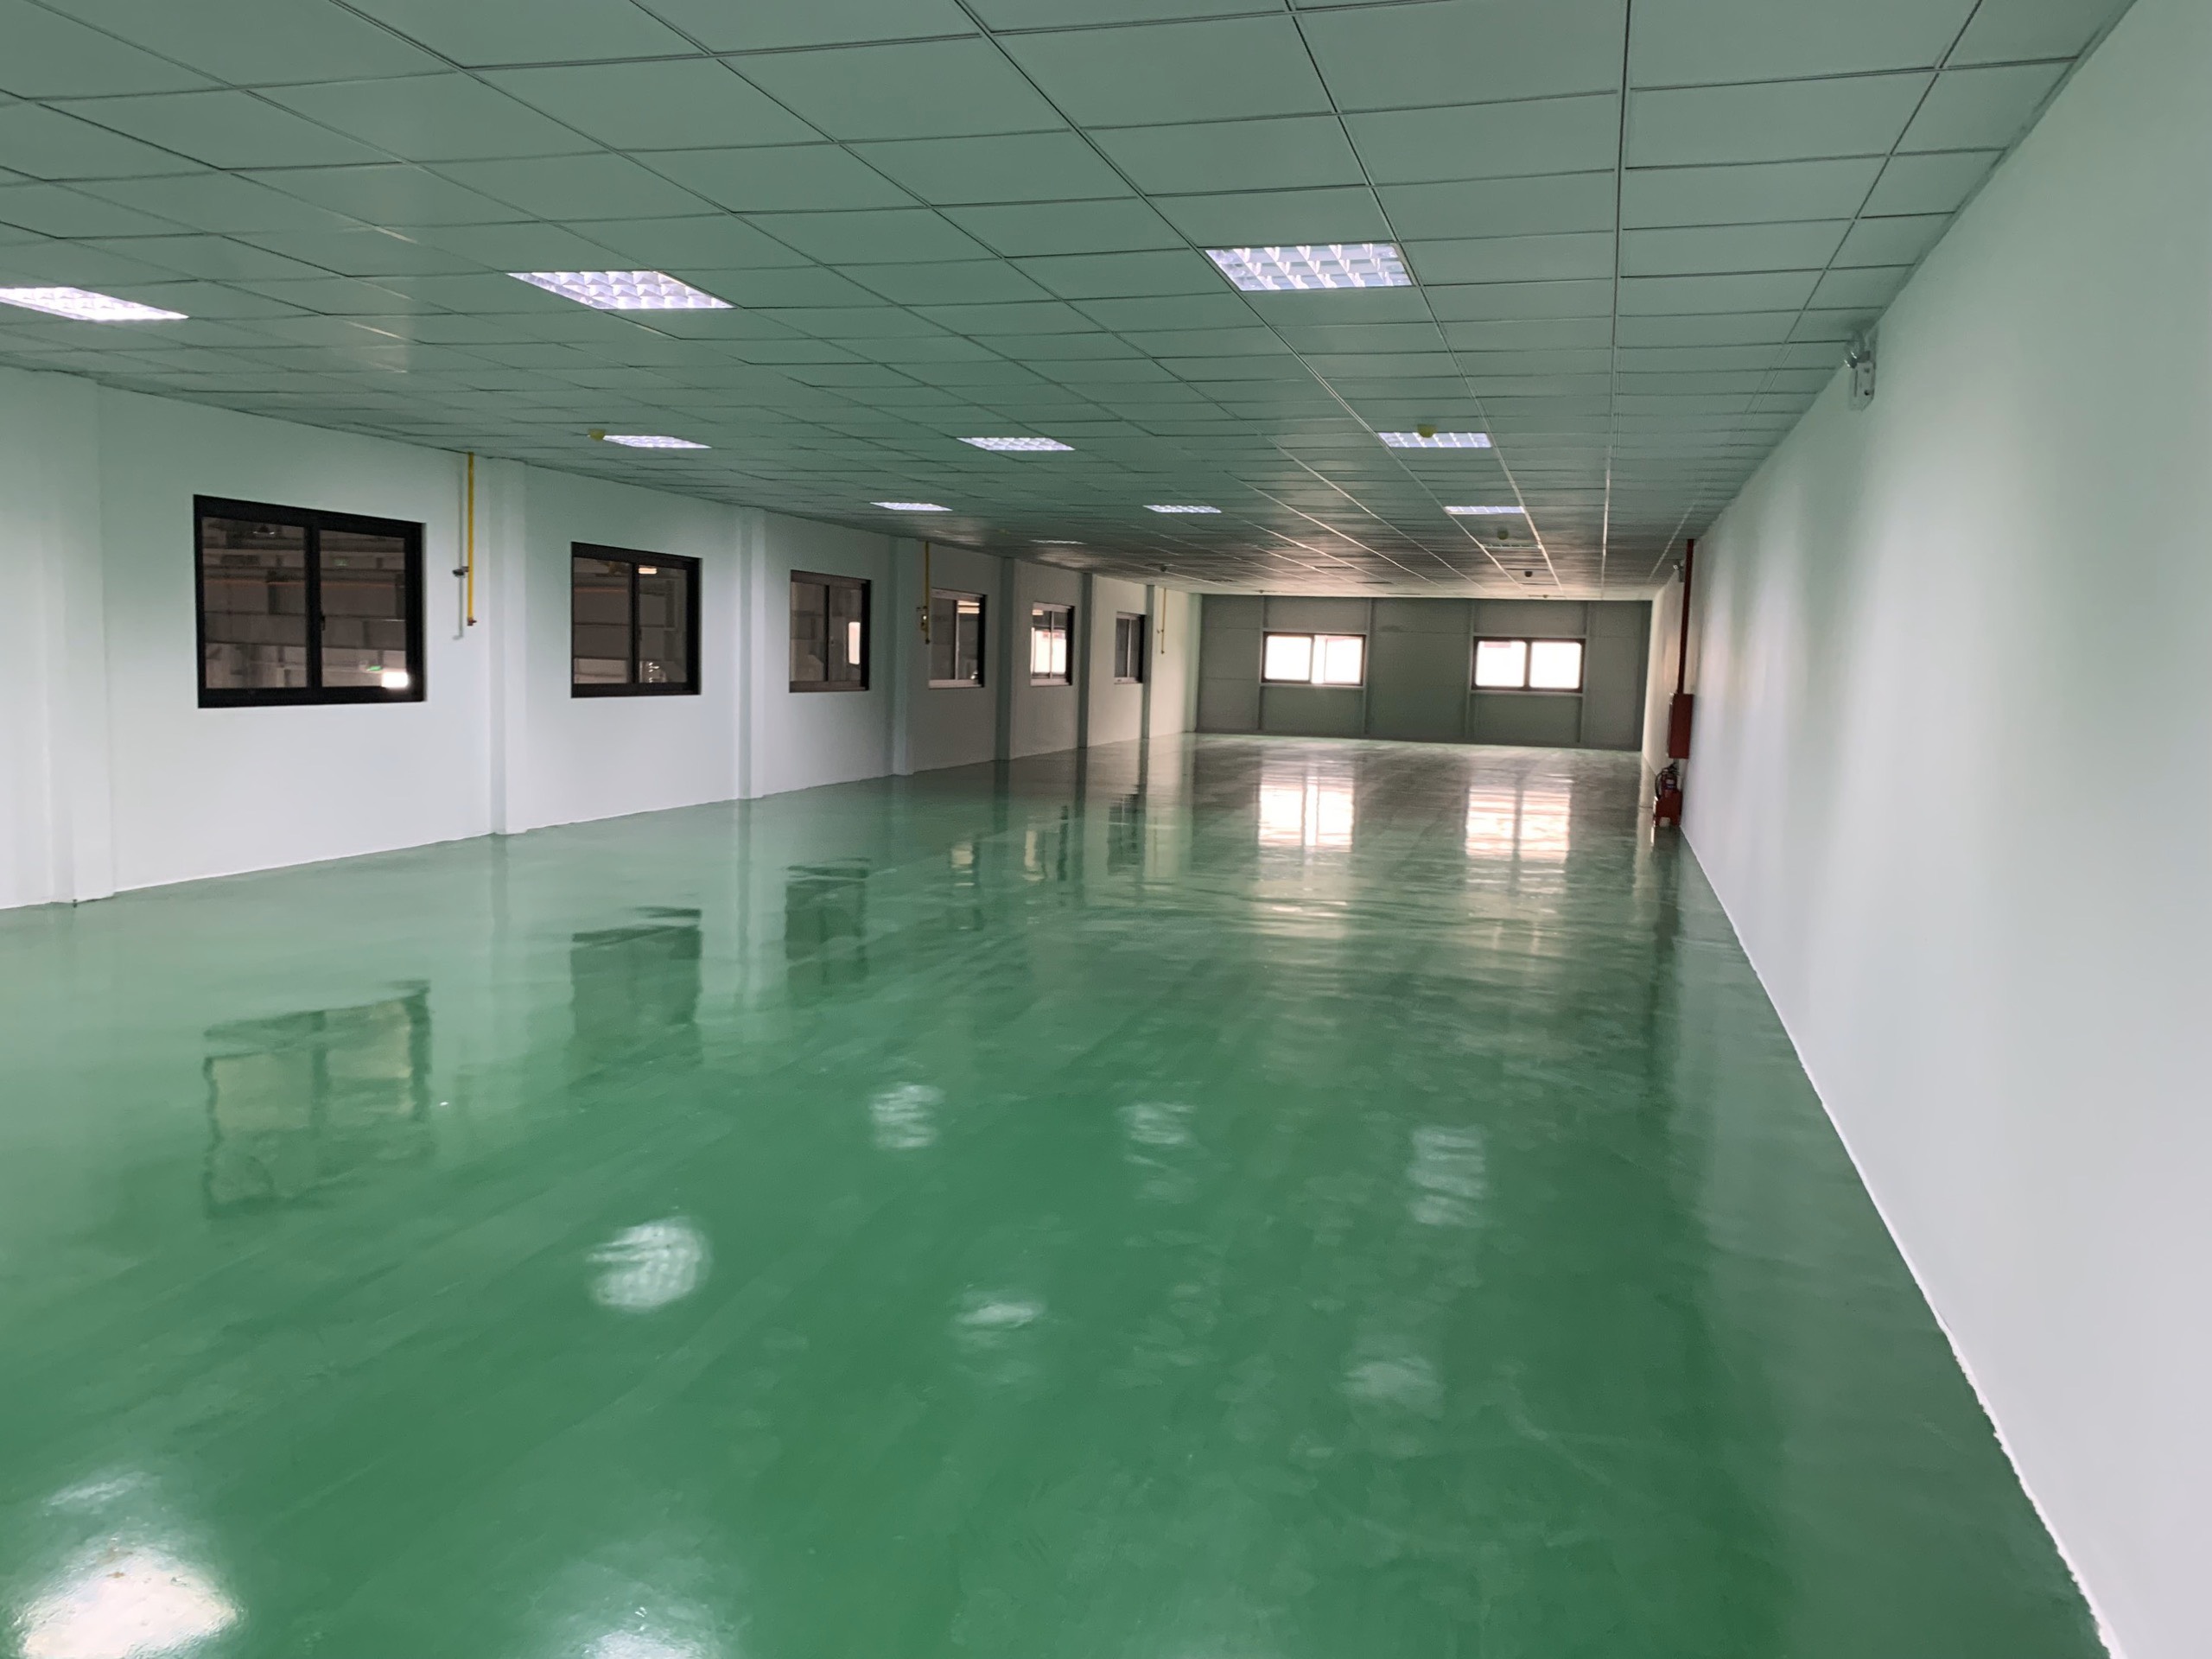 Cho thuê nhà xưởng tại Bắc Giang, đủ điều kiện EPE, xưởng mới giá chỉ 3.5$/m2 . LH 0988 457 392 2